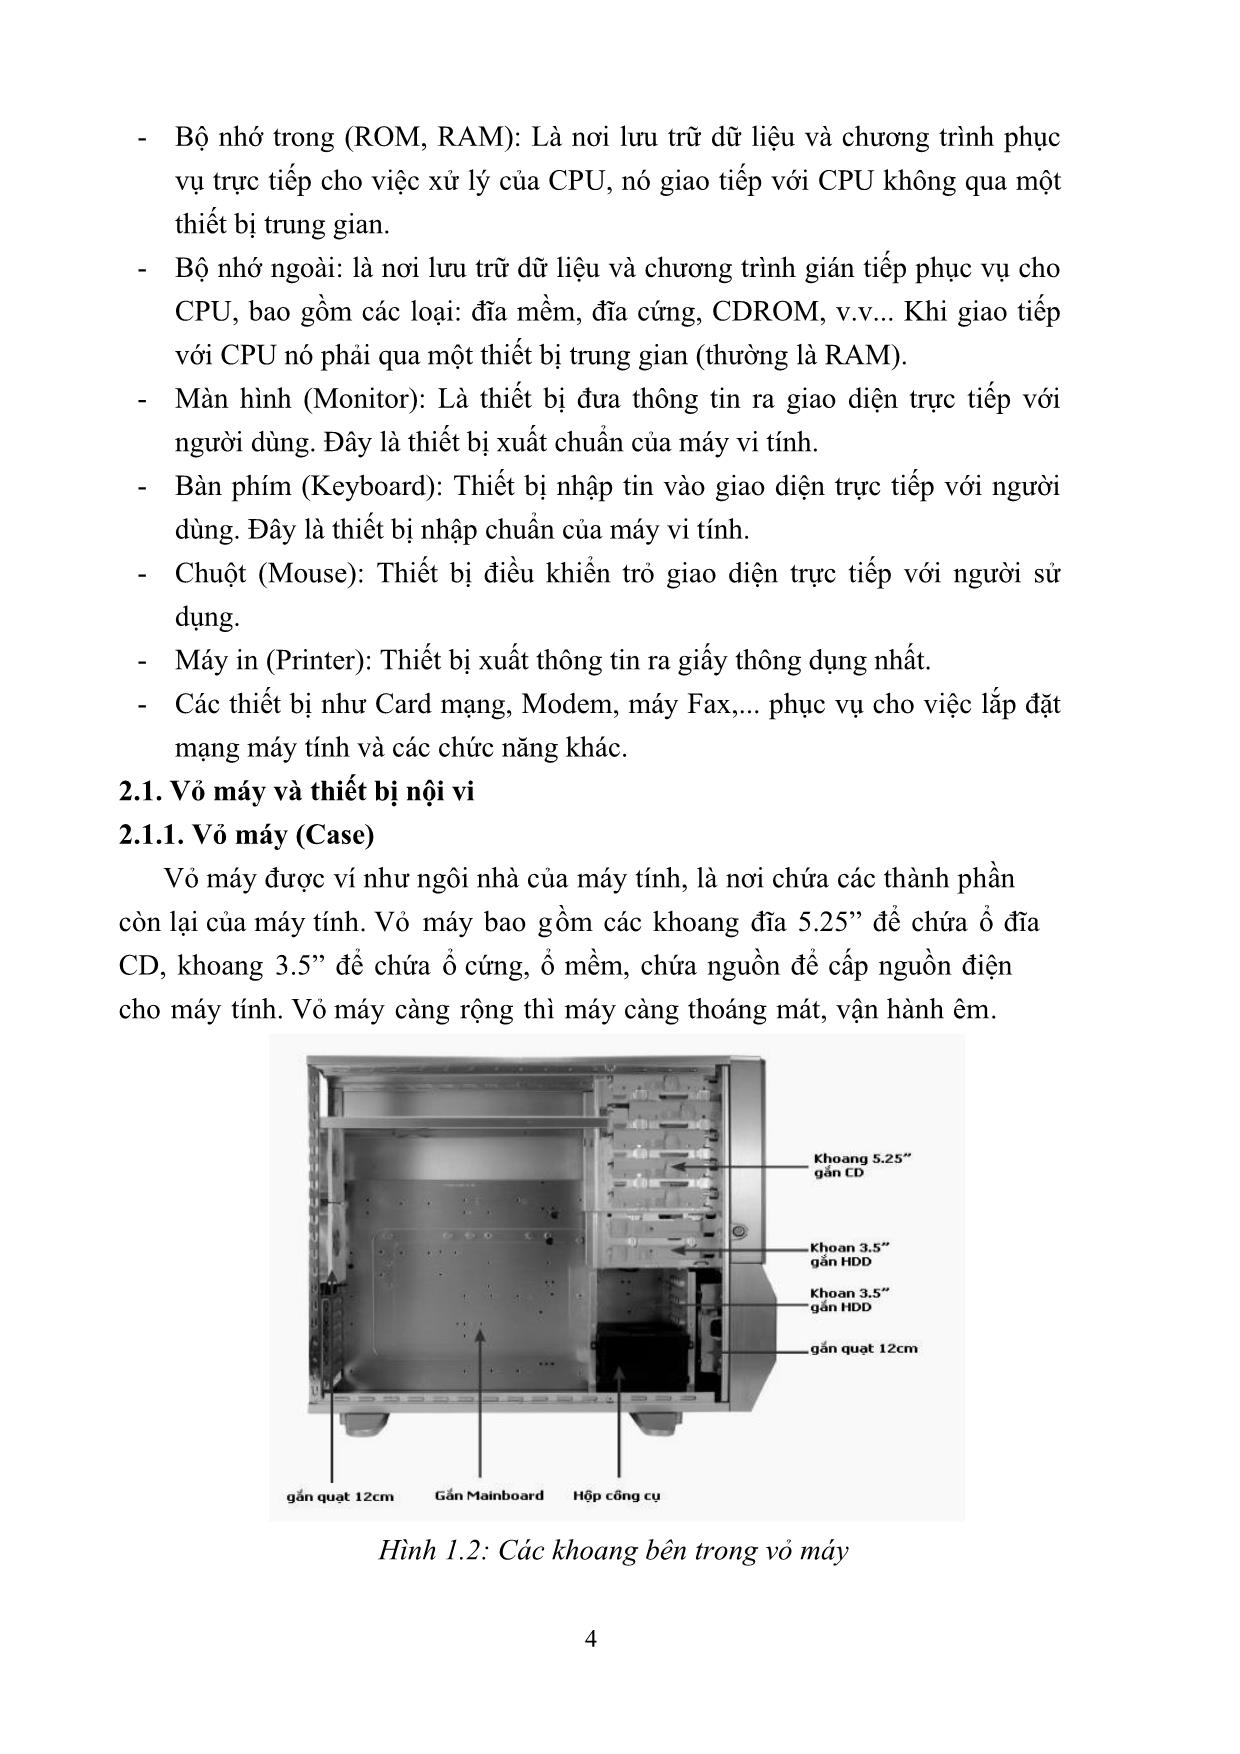 Giáo trình Lắp ráp và cài đặt máy tính (Phần 1) trang 8